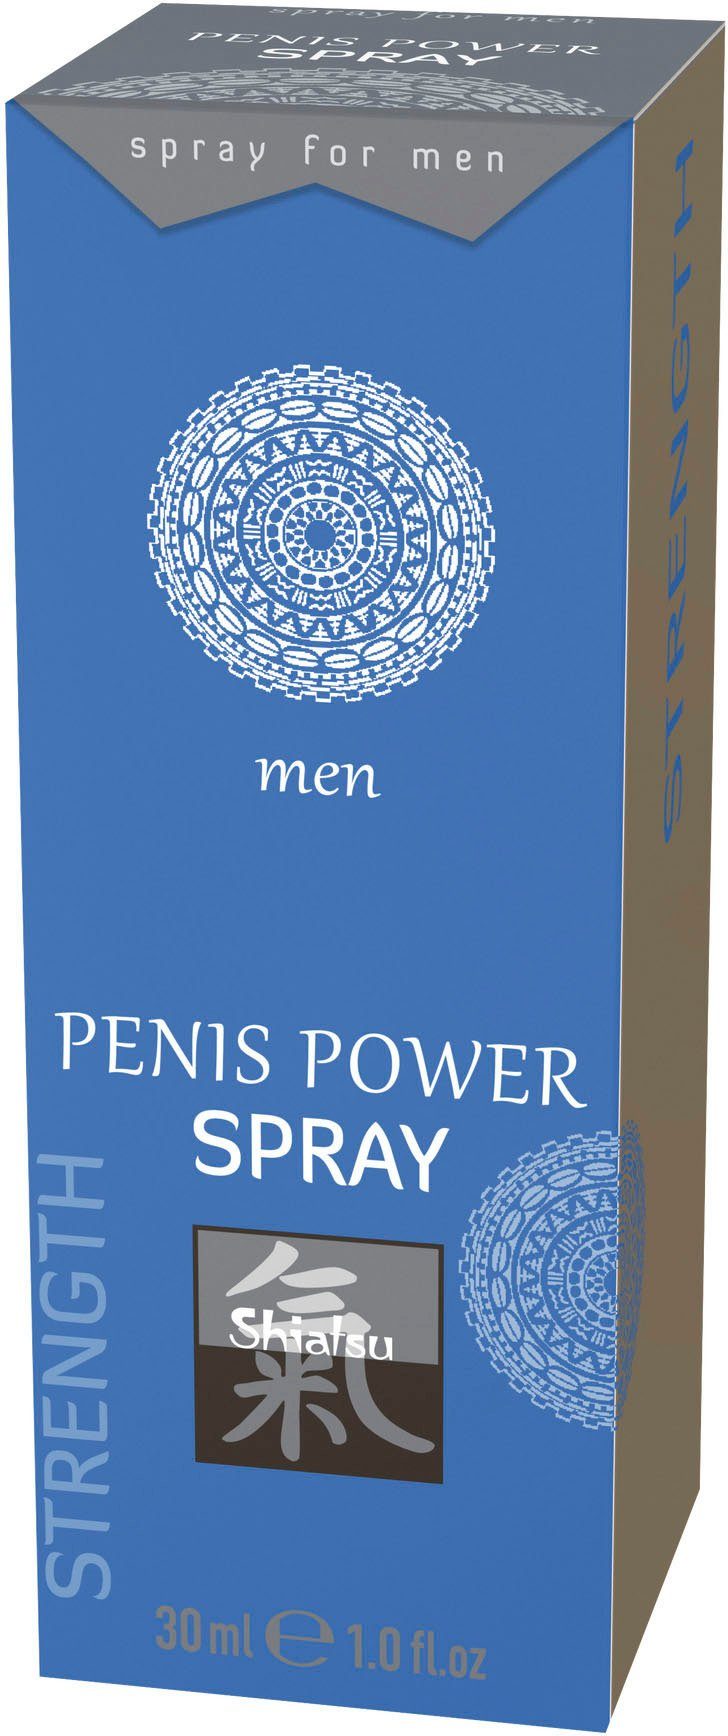 Shiatsu Intimpflege, Penis Power Spray